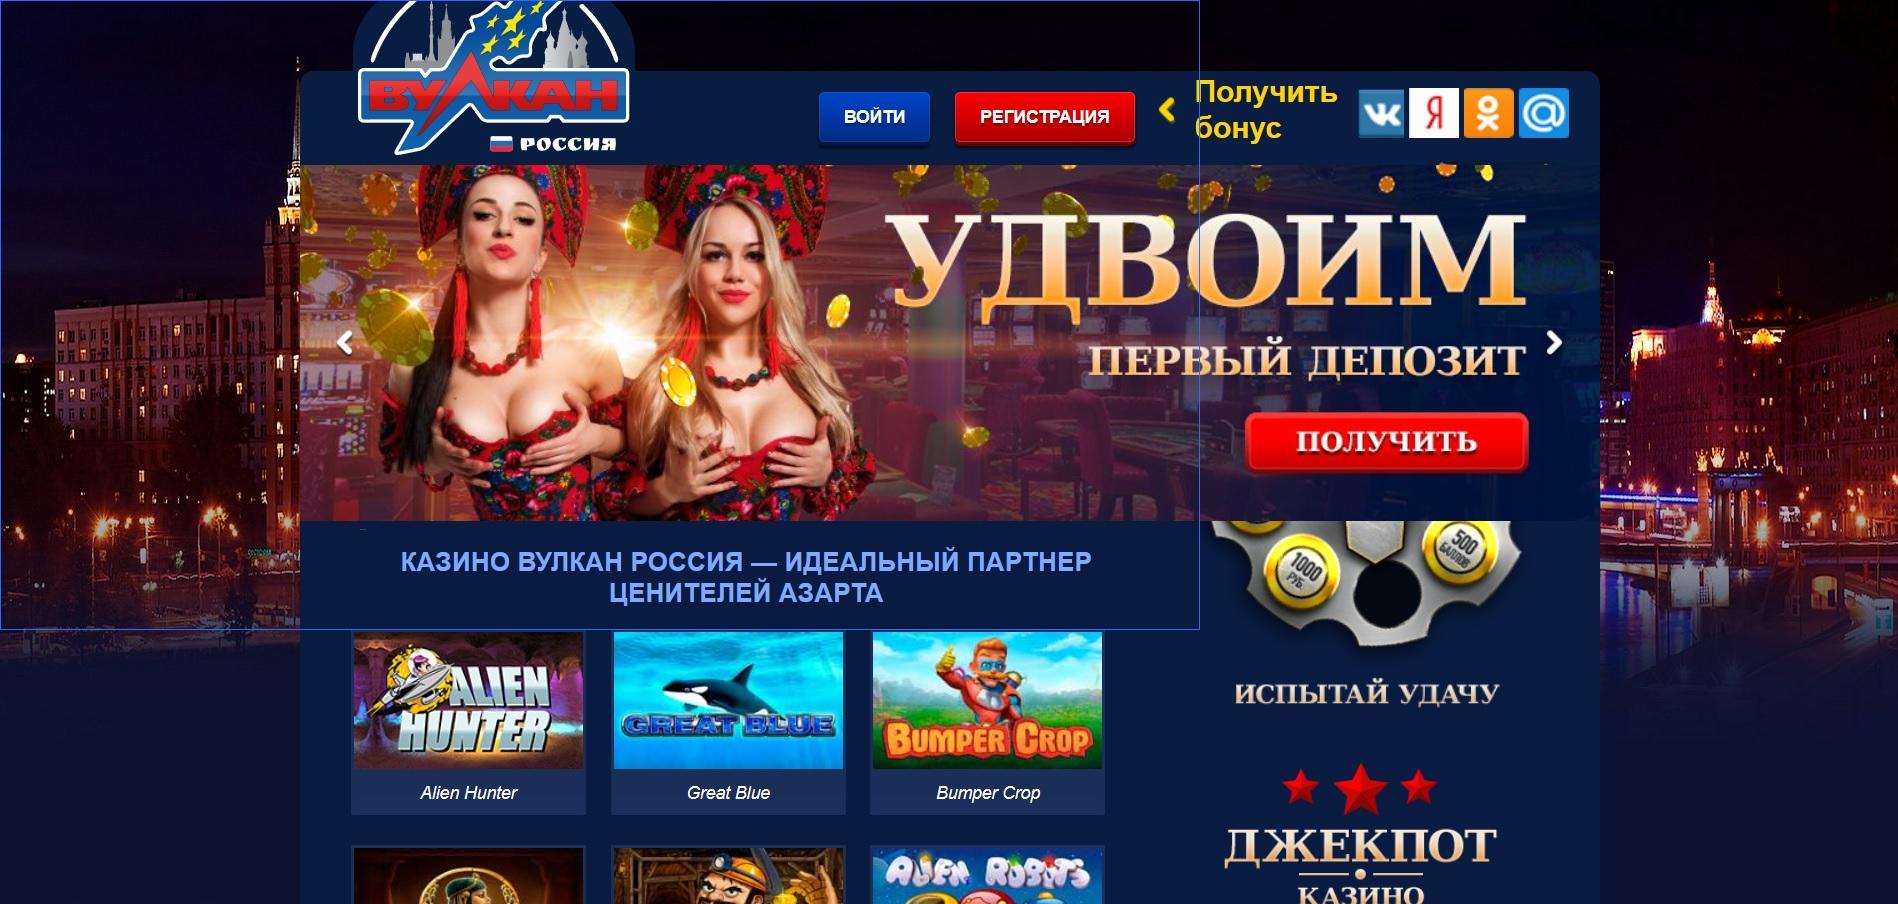 Бездепозитный бонус игровые автоматы за регистрацию 2015 игровые автоматы с пополнением от 50 рублей